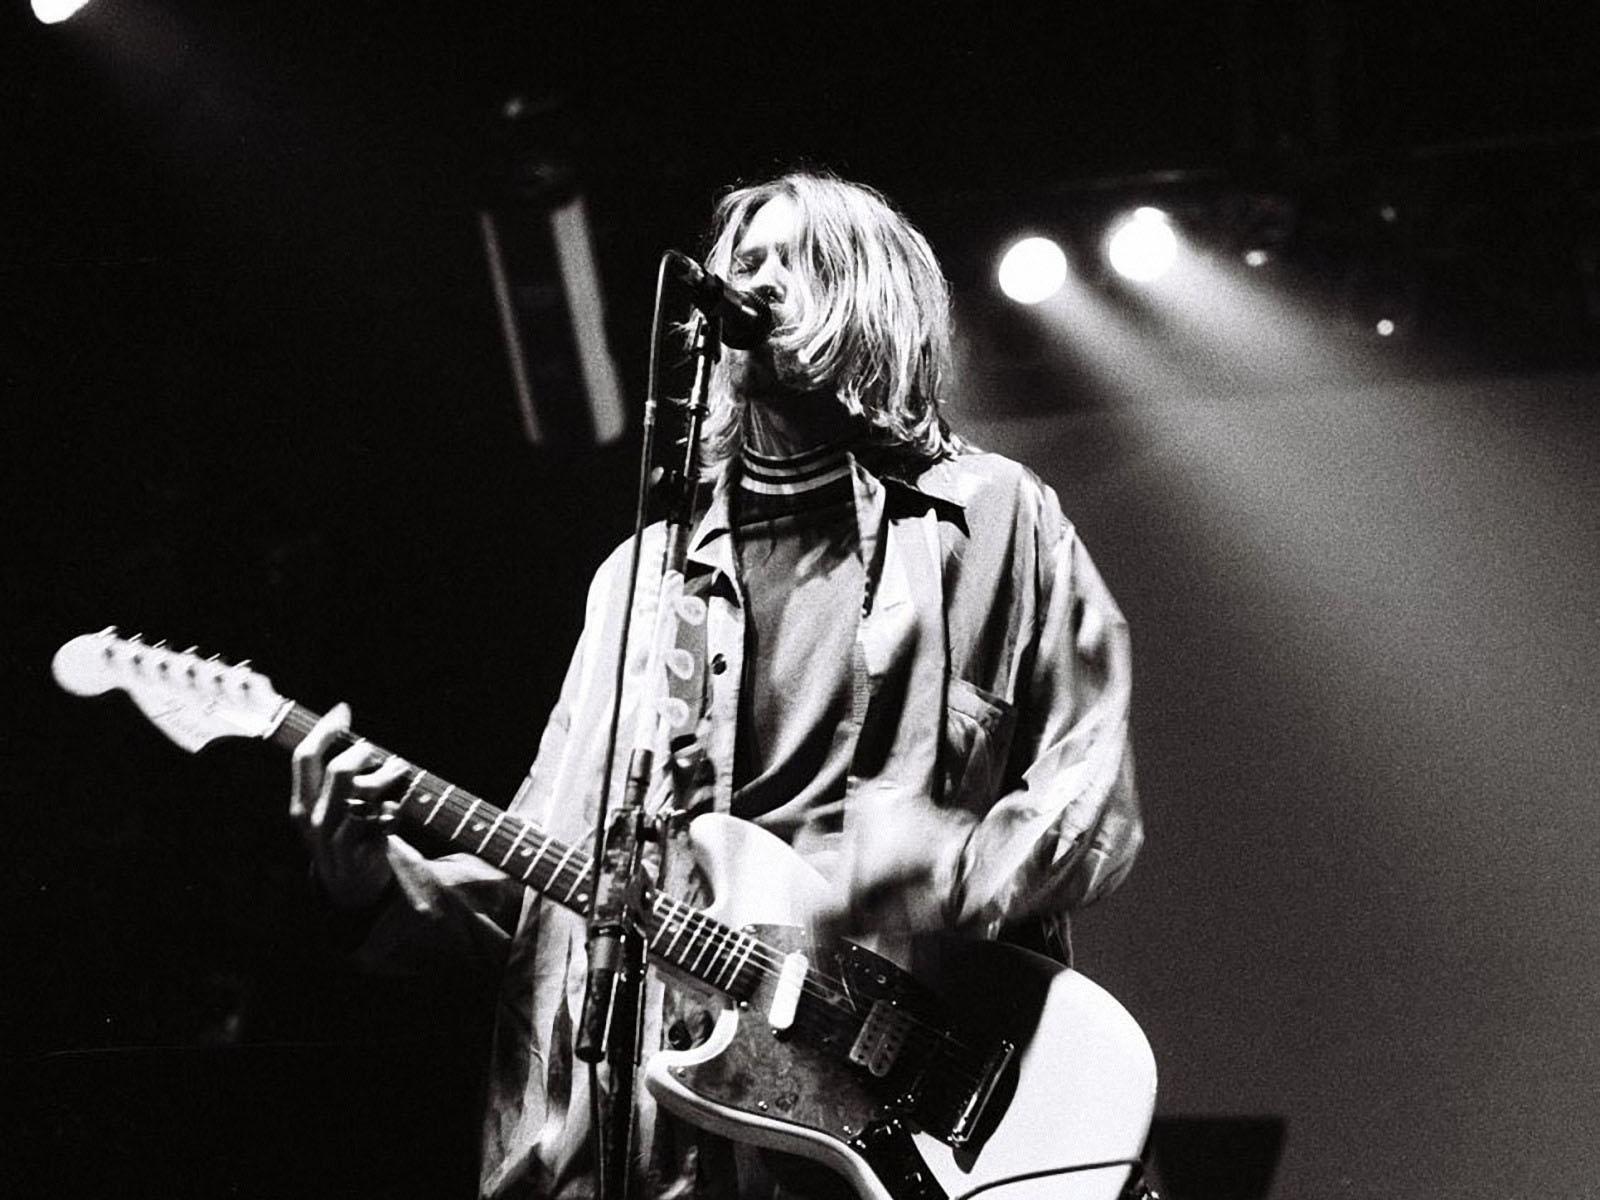 Kurt Cobain Backgrounds